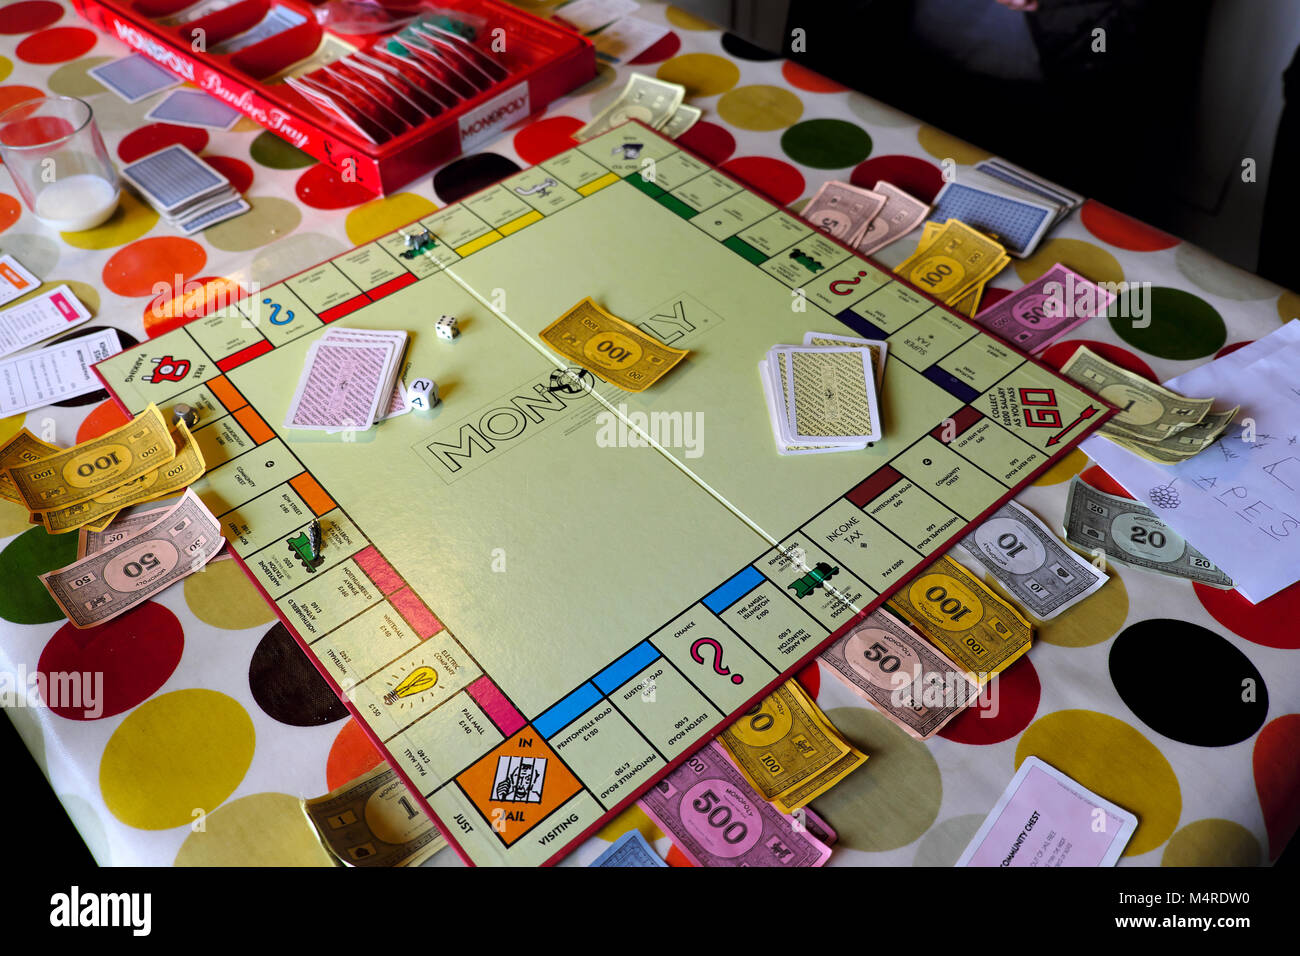 Scheda di monopolio gioco che viene giocato da bambini all'interno di una casa su un tavolo con la tovaglia colorato a metà termine in Carmarthenshire Wales UK Foto Stock